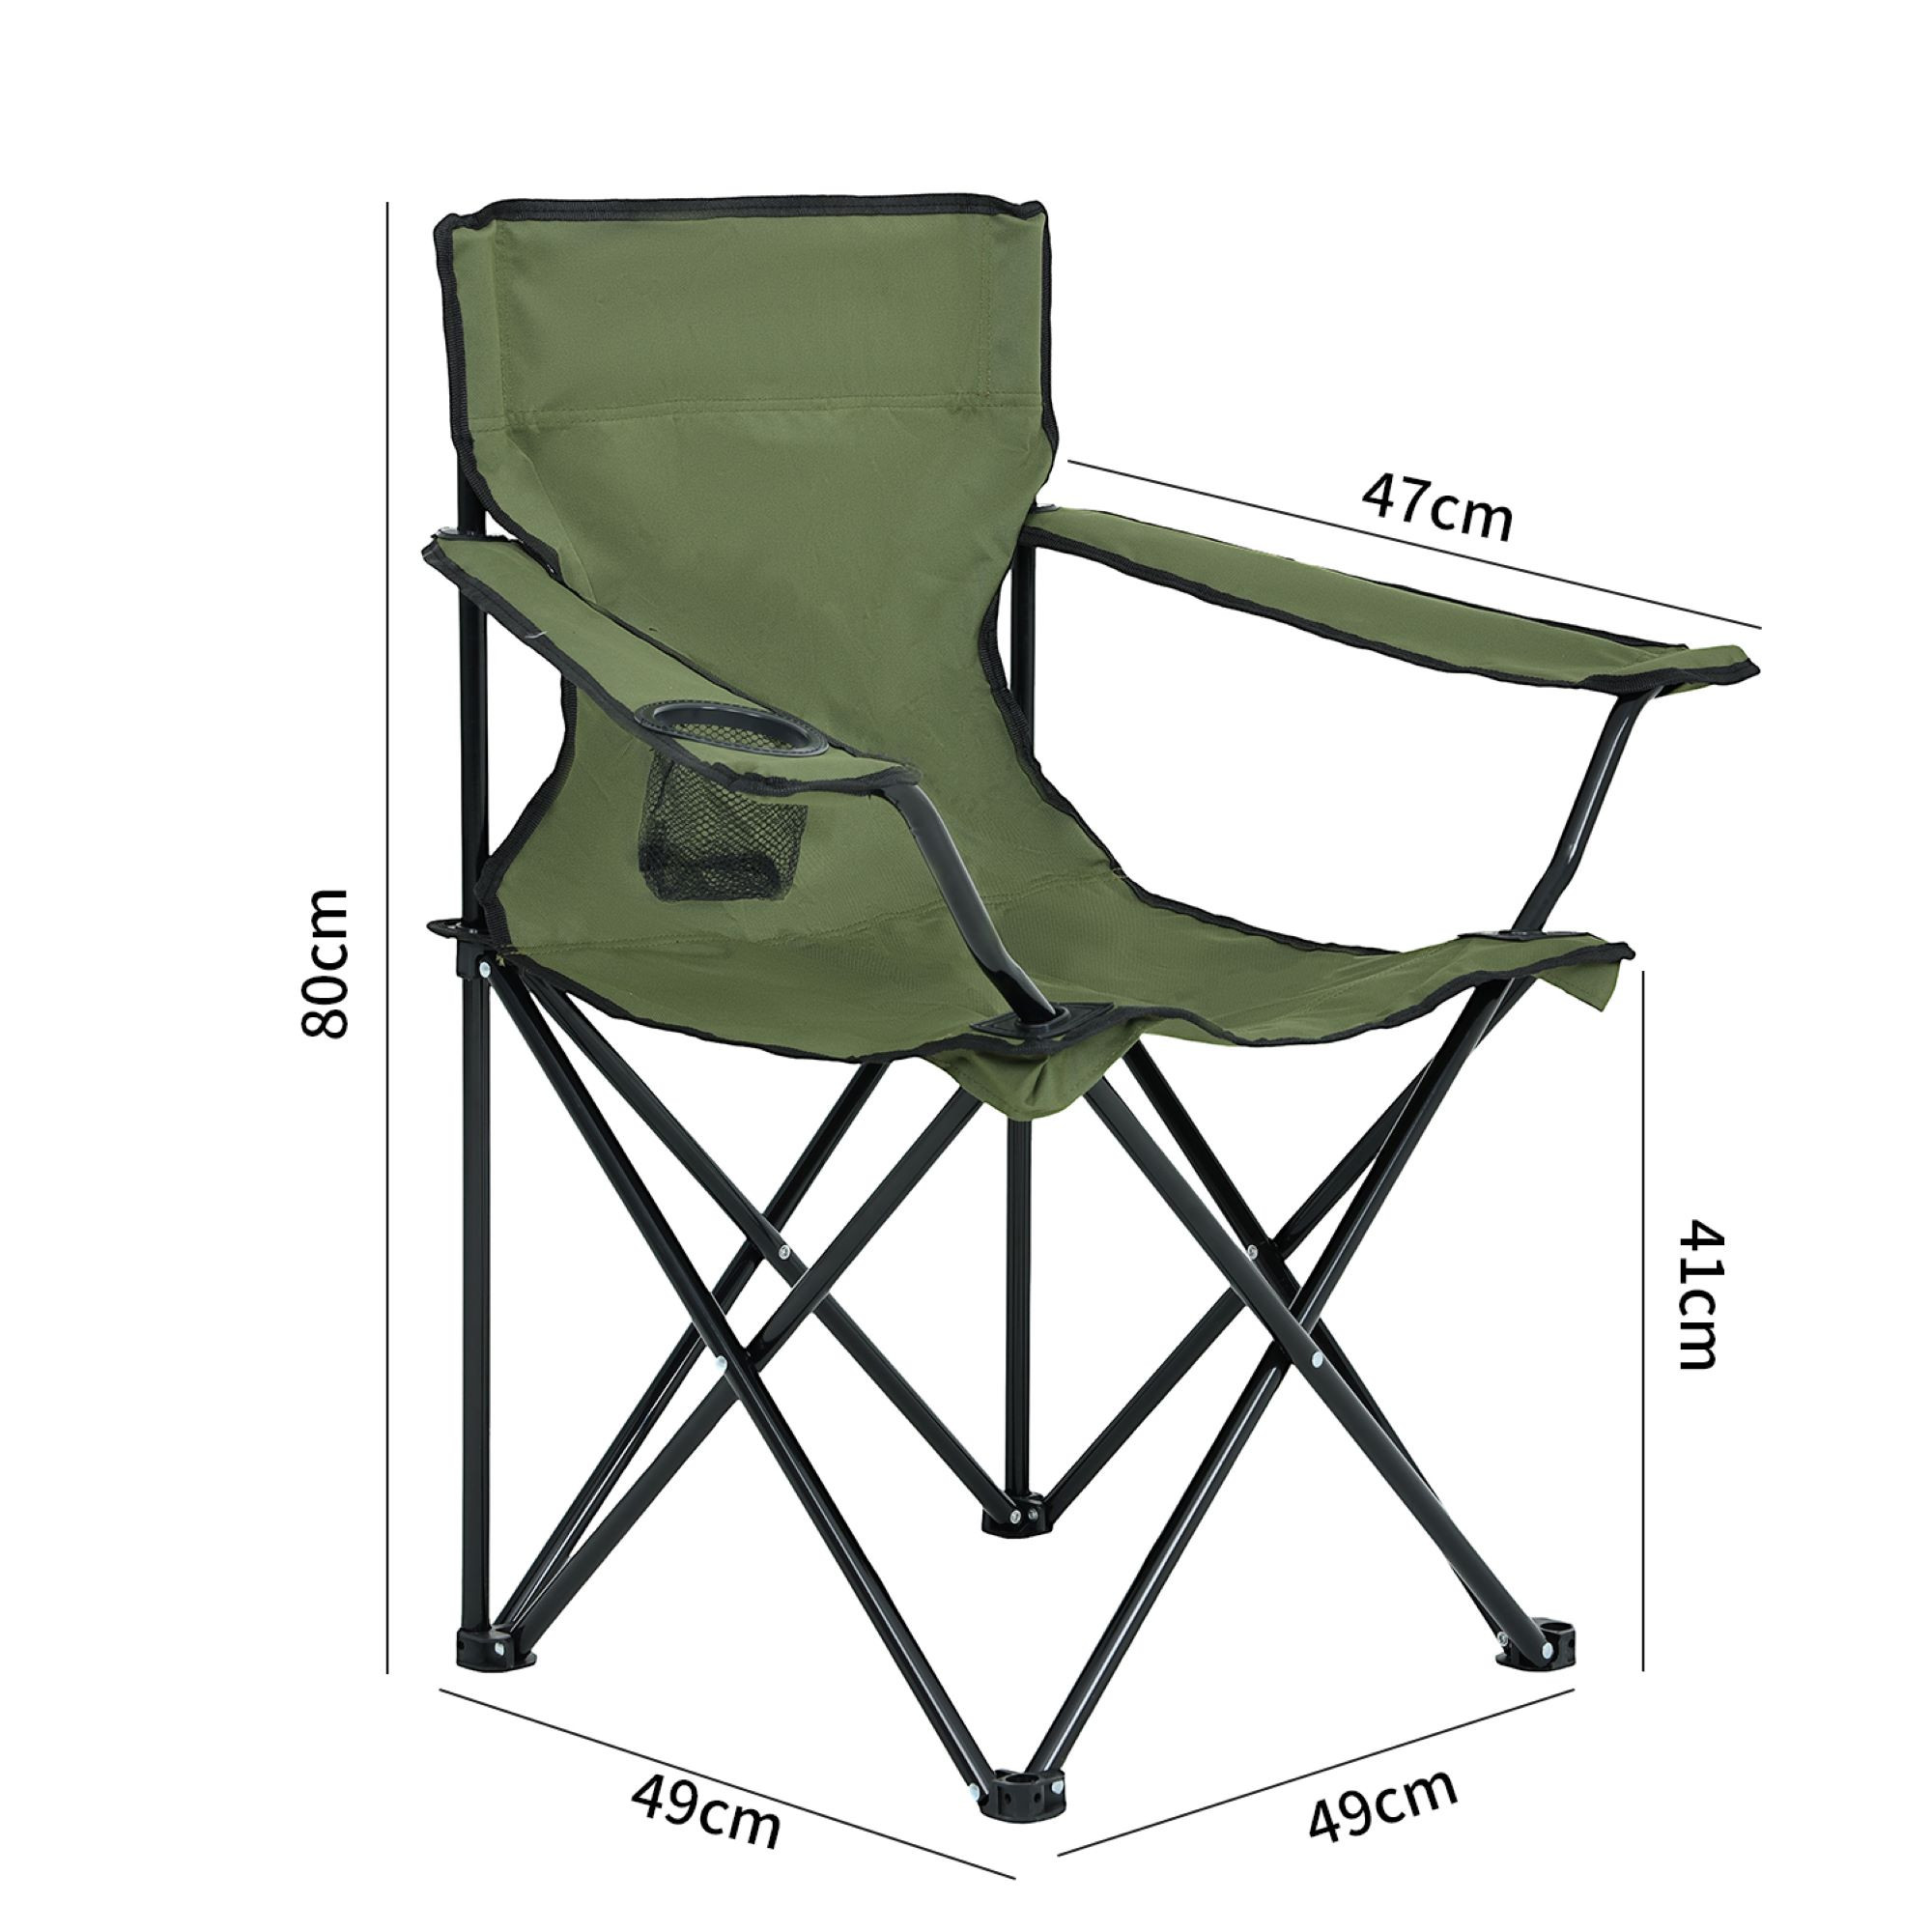 Wymiary 3D - Składane krzesło kempingowe ANTER w kolorze zielonym - AKORD Fabryka Mebli